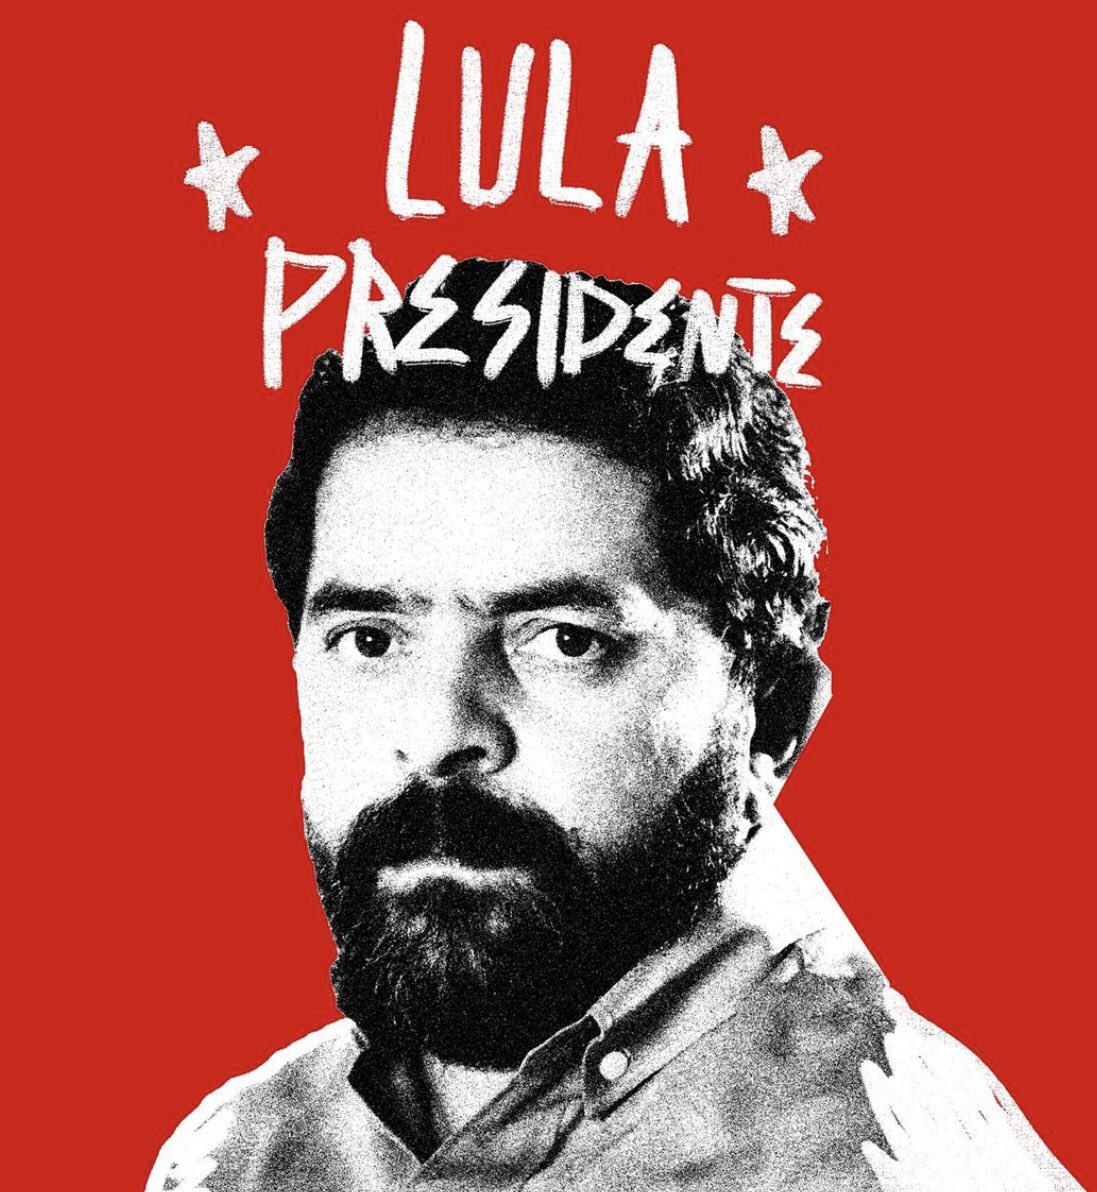 Já é 01 de janeiro de 2023: é LULA PRESIDENTE ⭐️❤️ 
.
.
#lula #lulapresidente2022 #equipelula #designativista